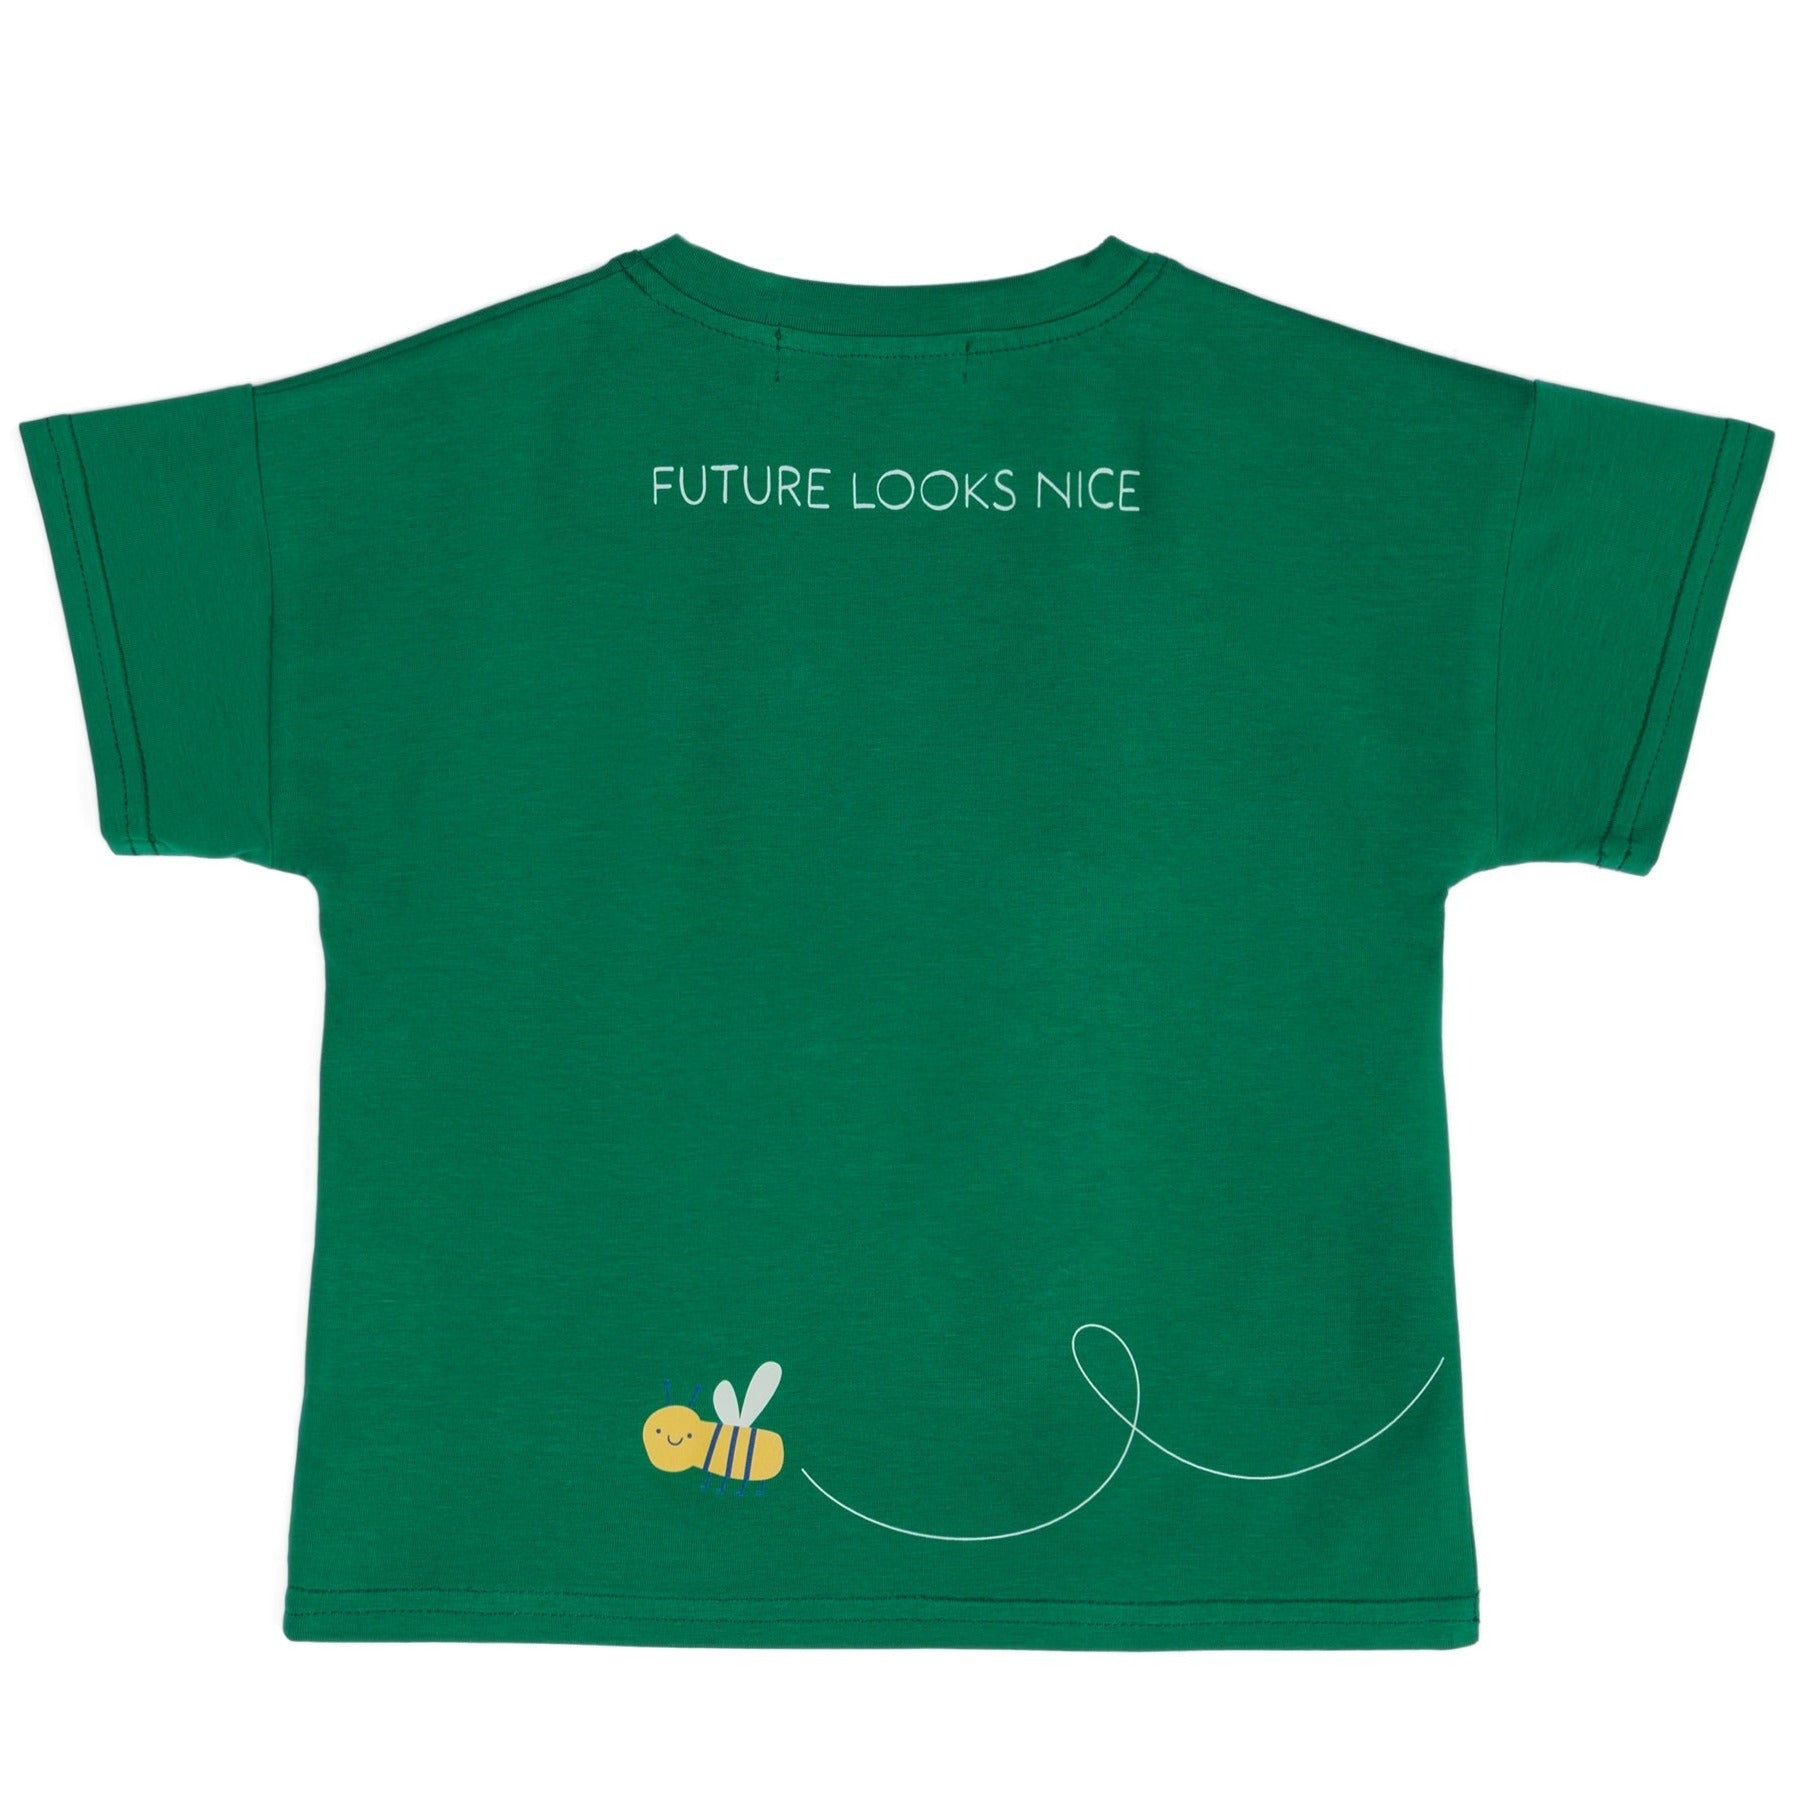 Historia de los niños: camiseta de algodón orgánico verde